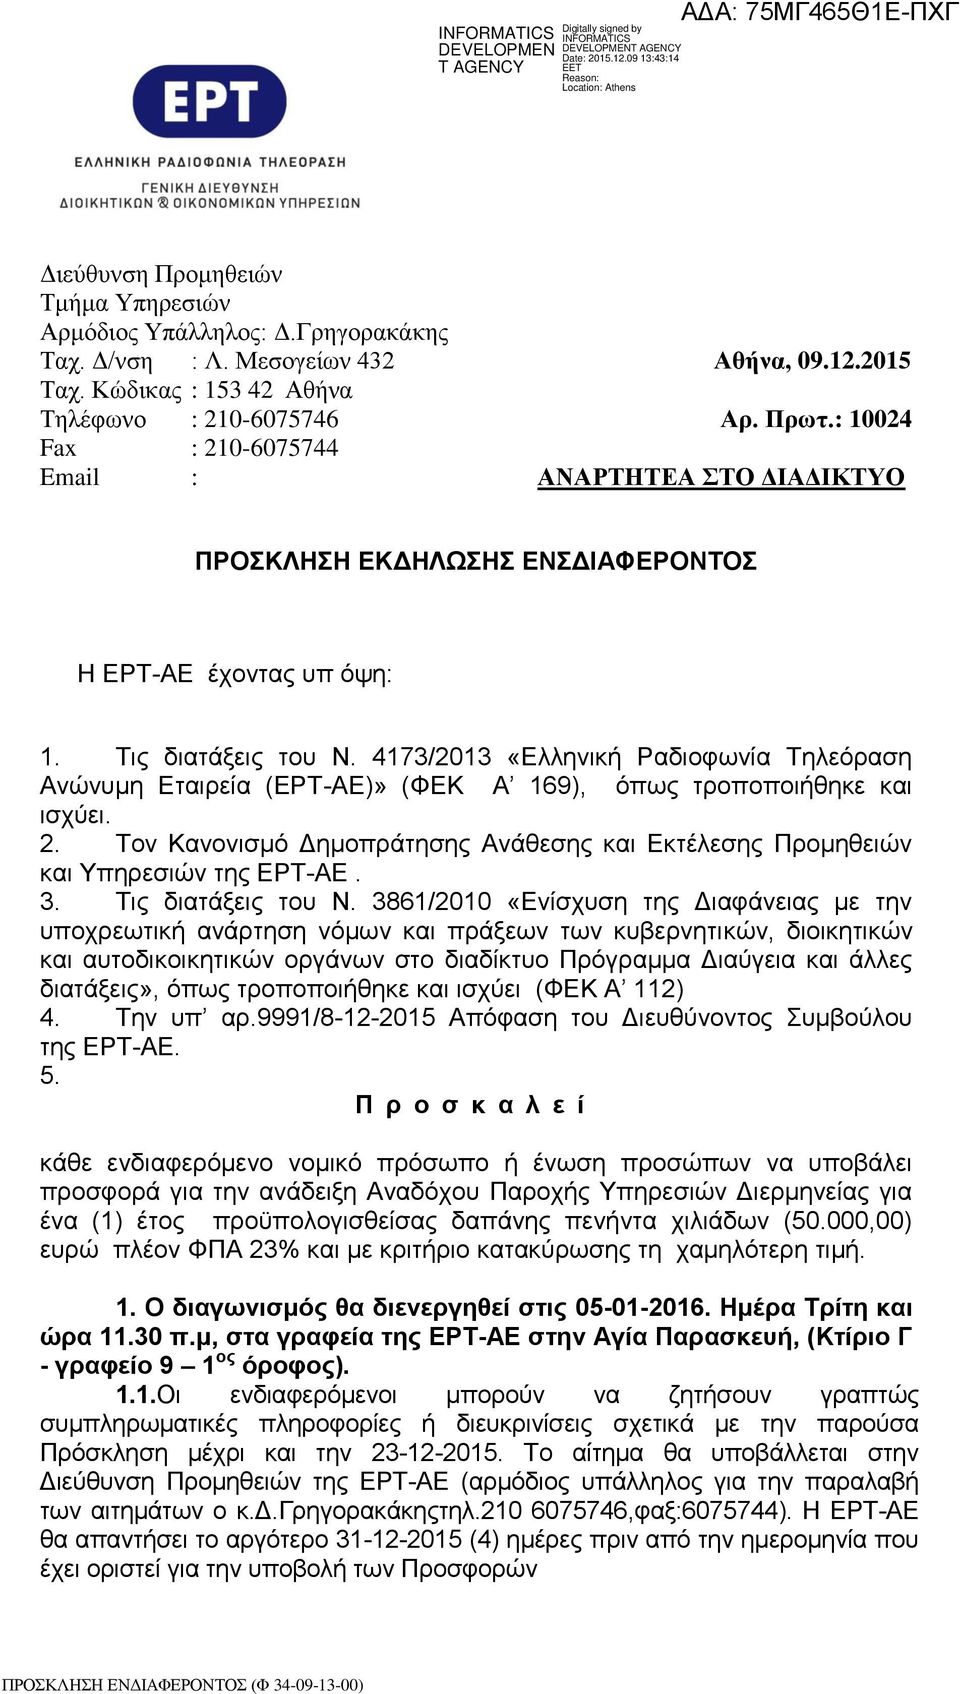 4173/2013 «Ελληνική Ραδιοφωνία Τηλεόραση Ανώνυμη Εταιρεία (ΕΡΤ-ΑΕ)» (ΦΕΚ Α 169), όπως τροποποιήθηκε και ισχύει. 2.